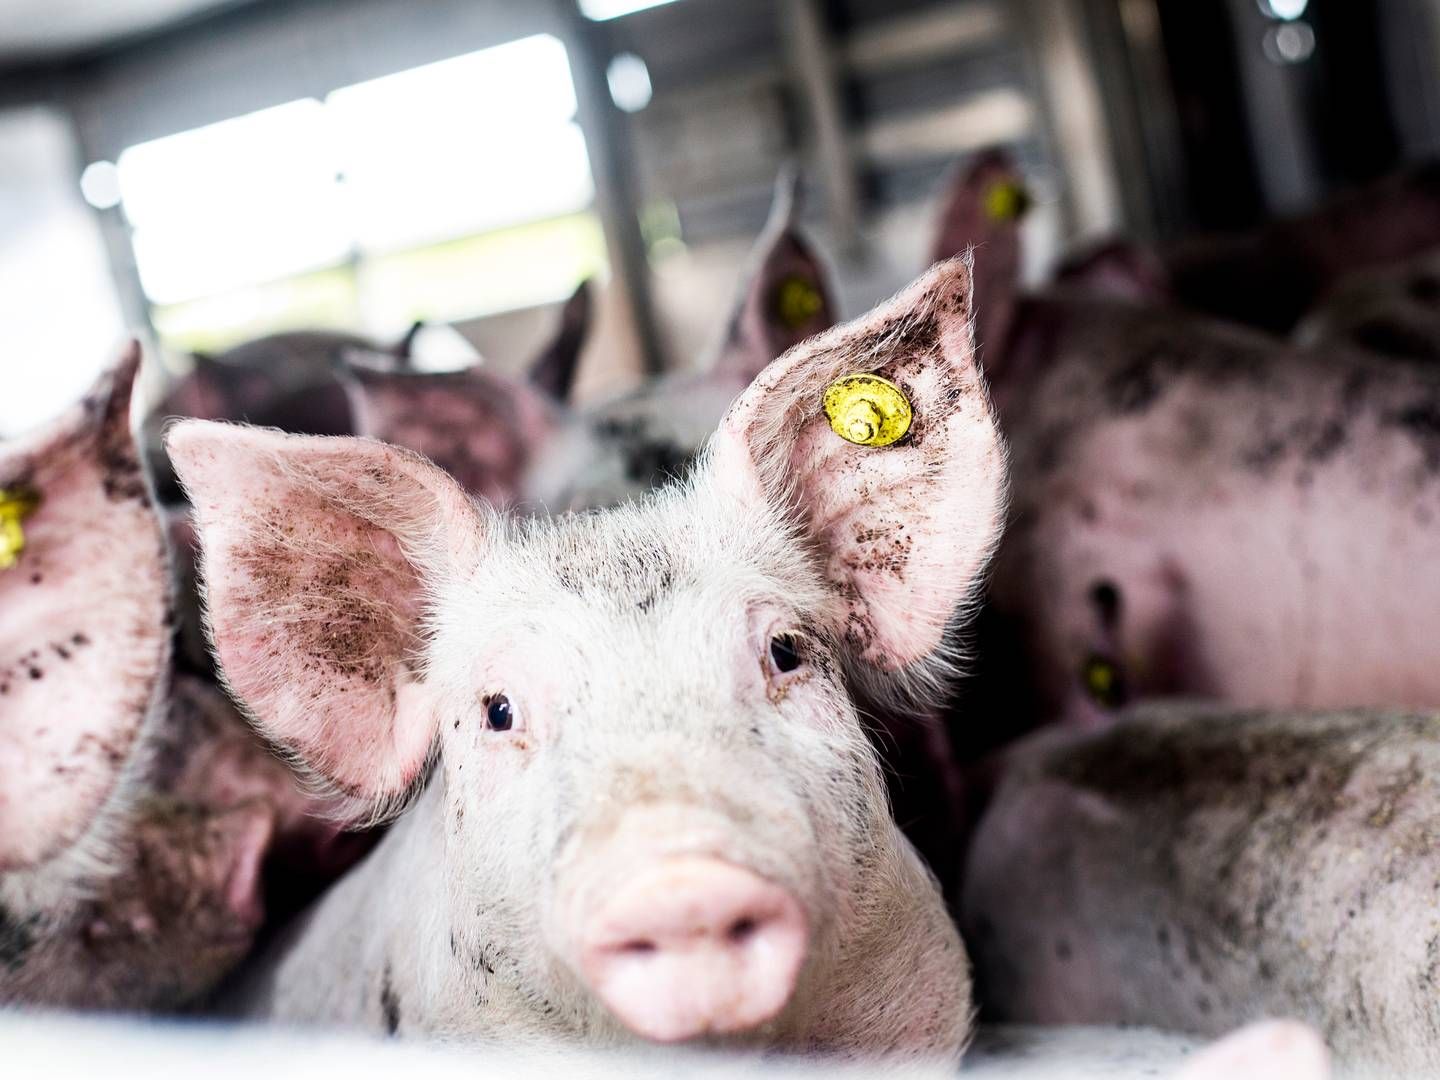 En virksomhed, der transporterer grise i Danmark, er blevet idømt en bøde for at være ansvarlig for, at to grise blev behandlet groft uforsvarligt. | Foto: Janus Engel